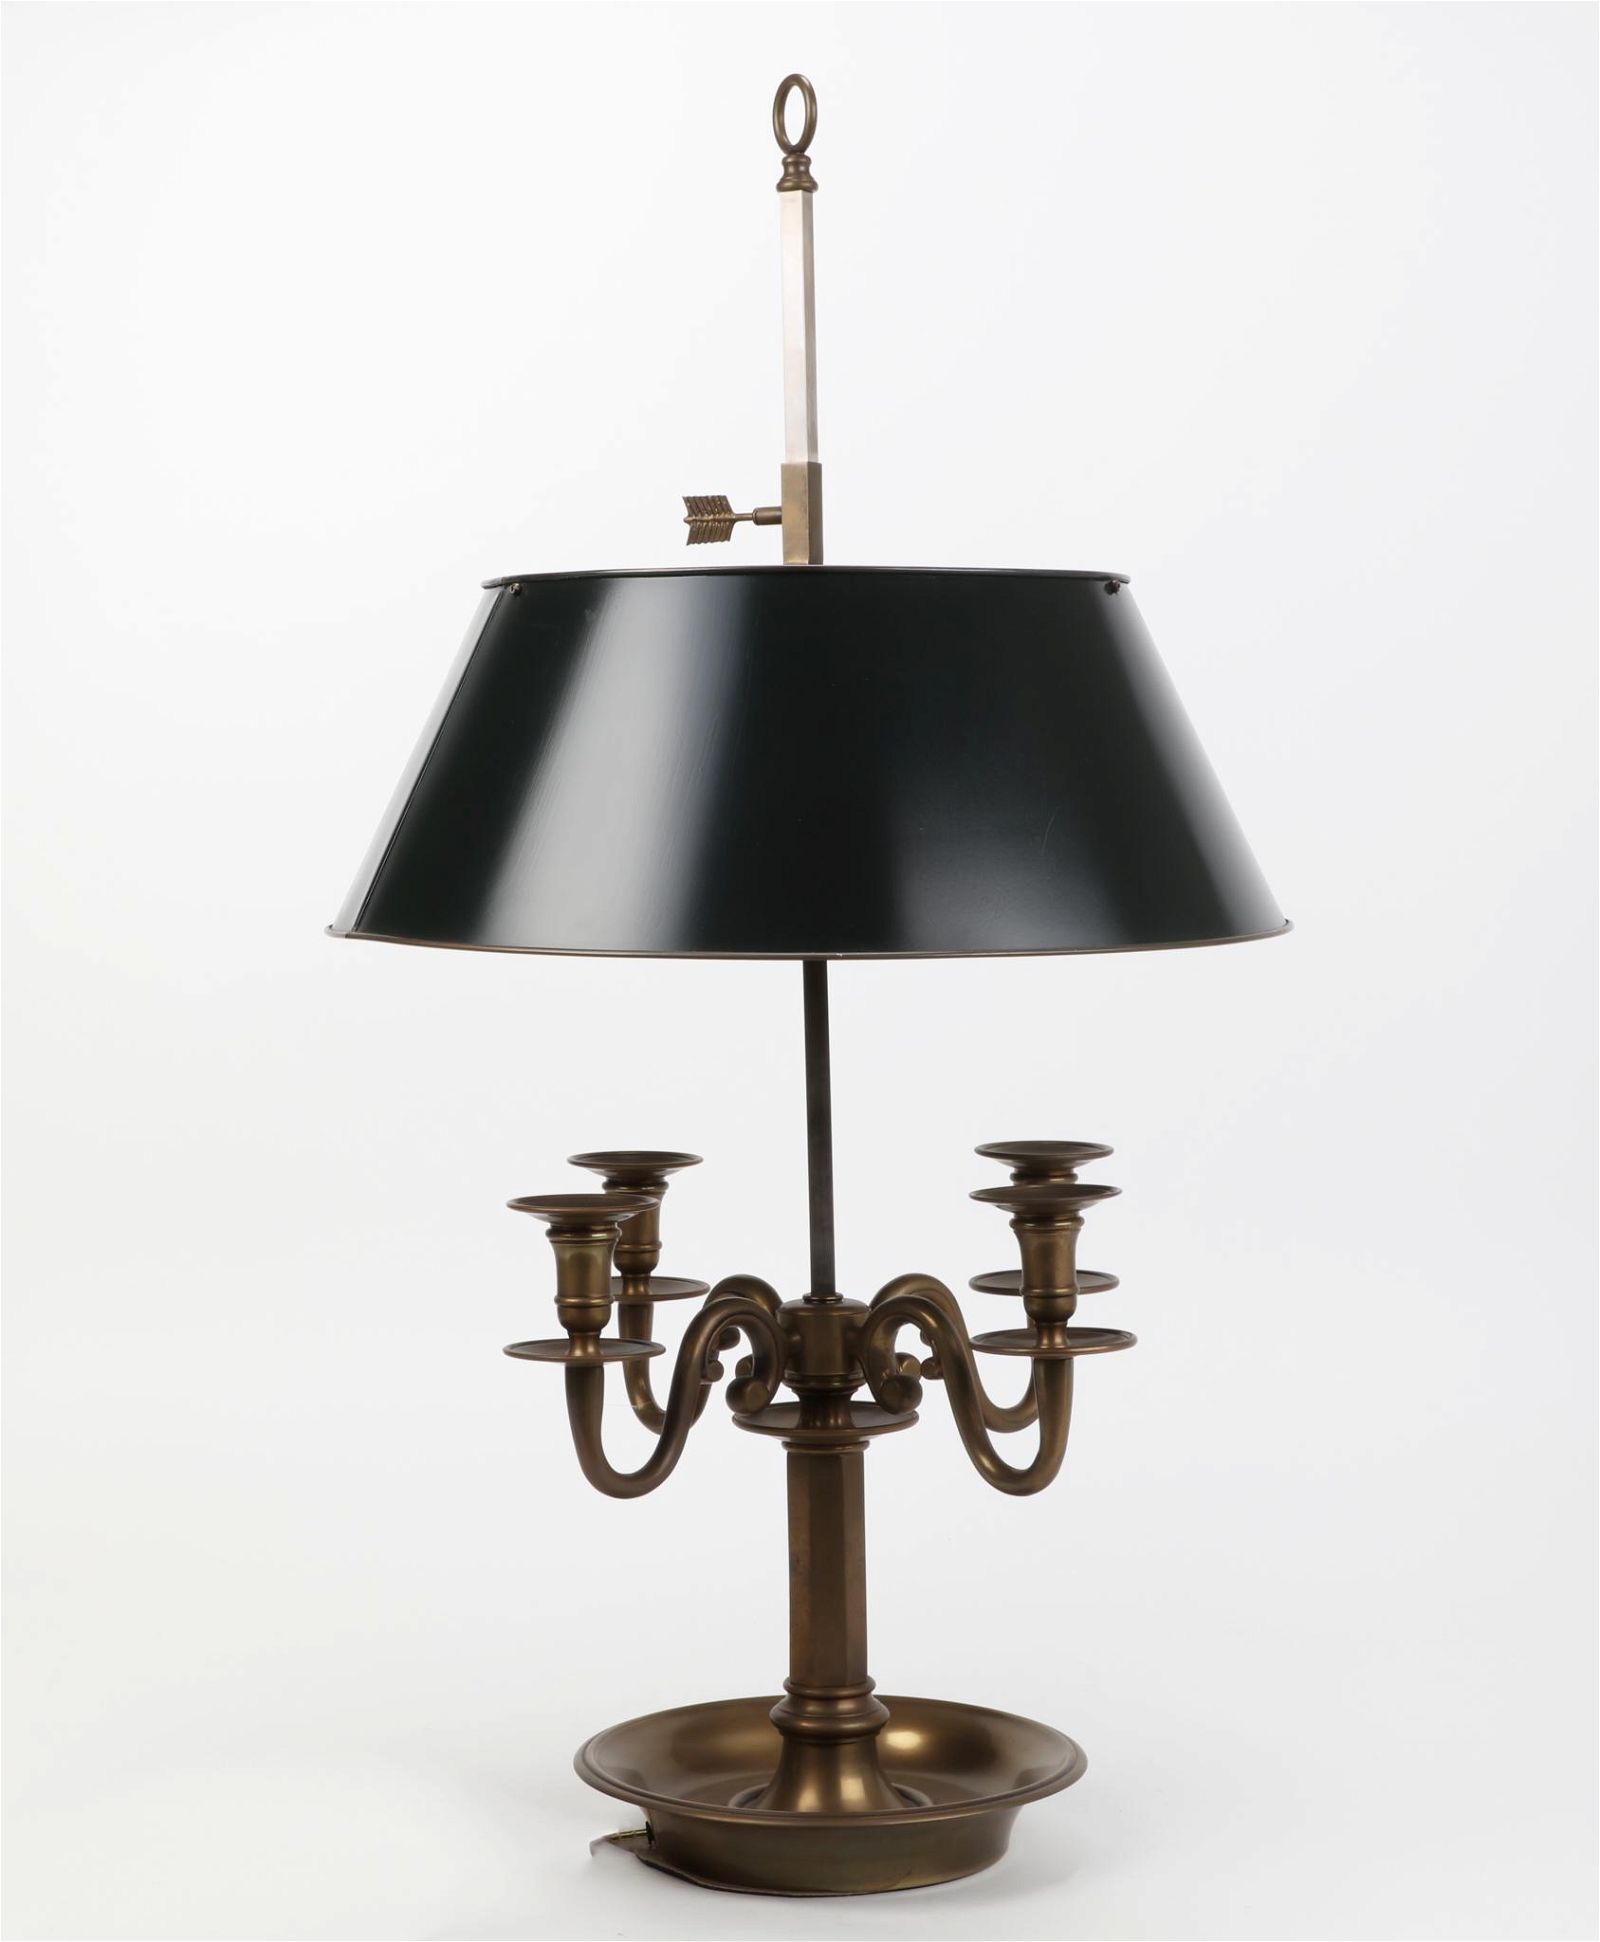 A LOUIS XVI STYLE BOUILLOTTE LAMPA